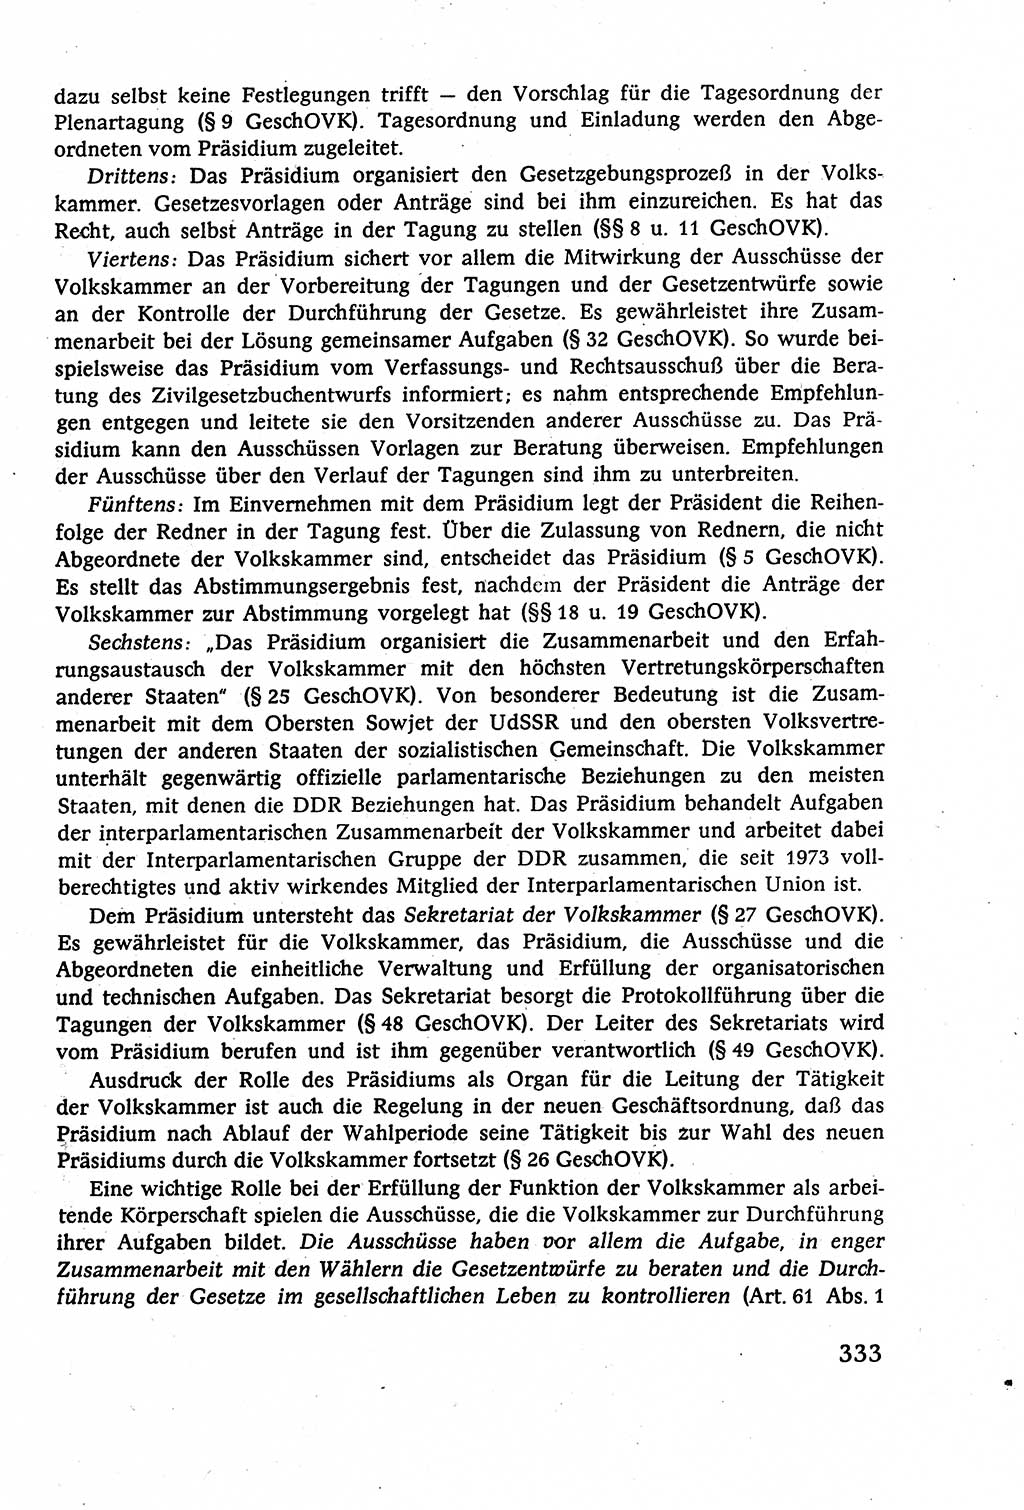 Staatsrecht der DDR (Deutsche Demokratische Republik), Lehrbuch 1977, Seite 333 (St.-R. DDR Lb. 1977, S. 333)